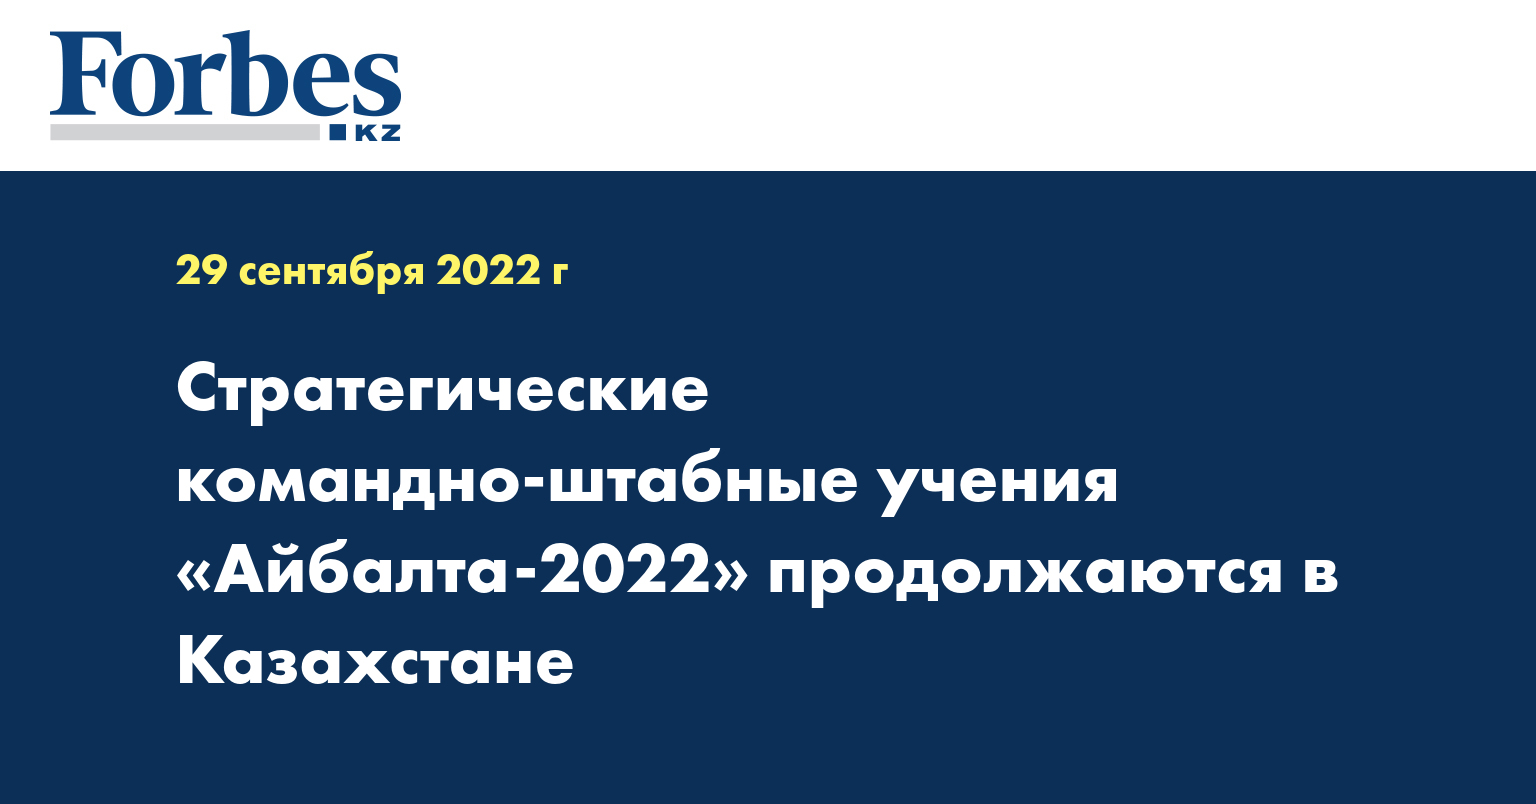 Стратегические командно-штабные учения «Айбалта-2022» продолжаются в Казахстане